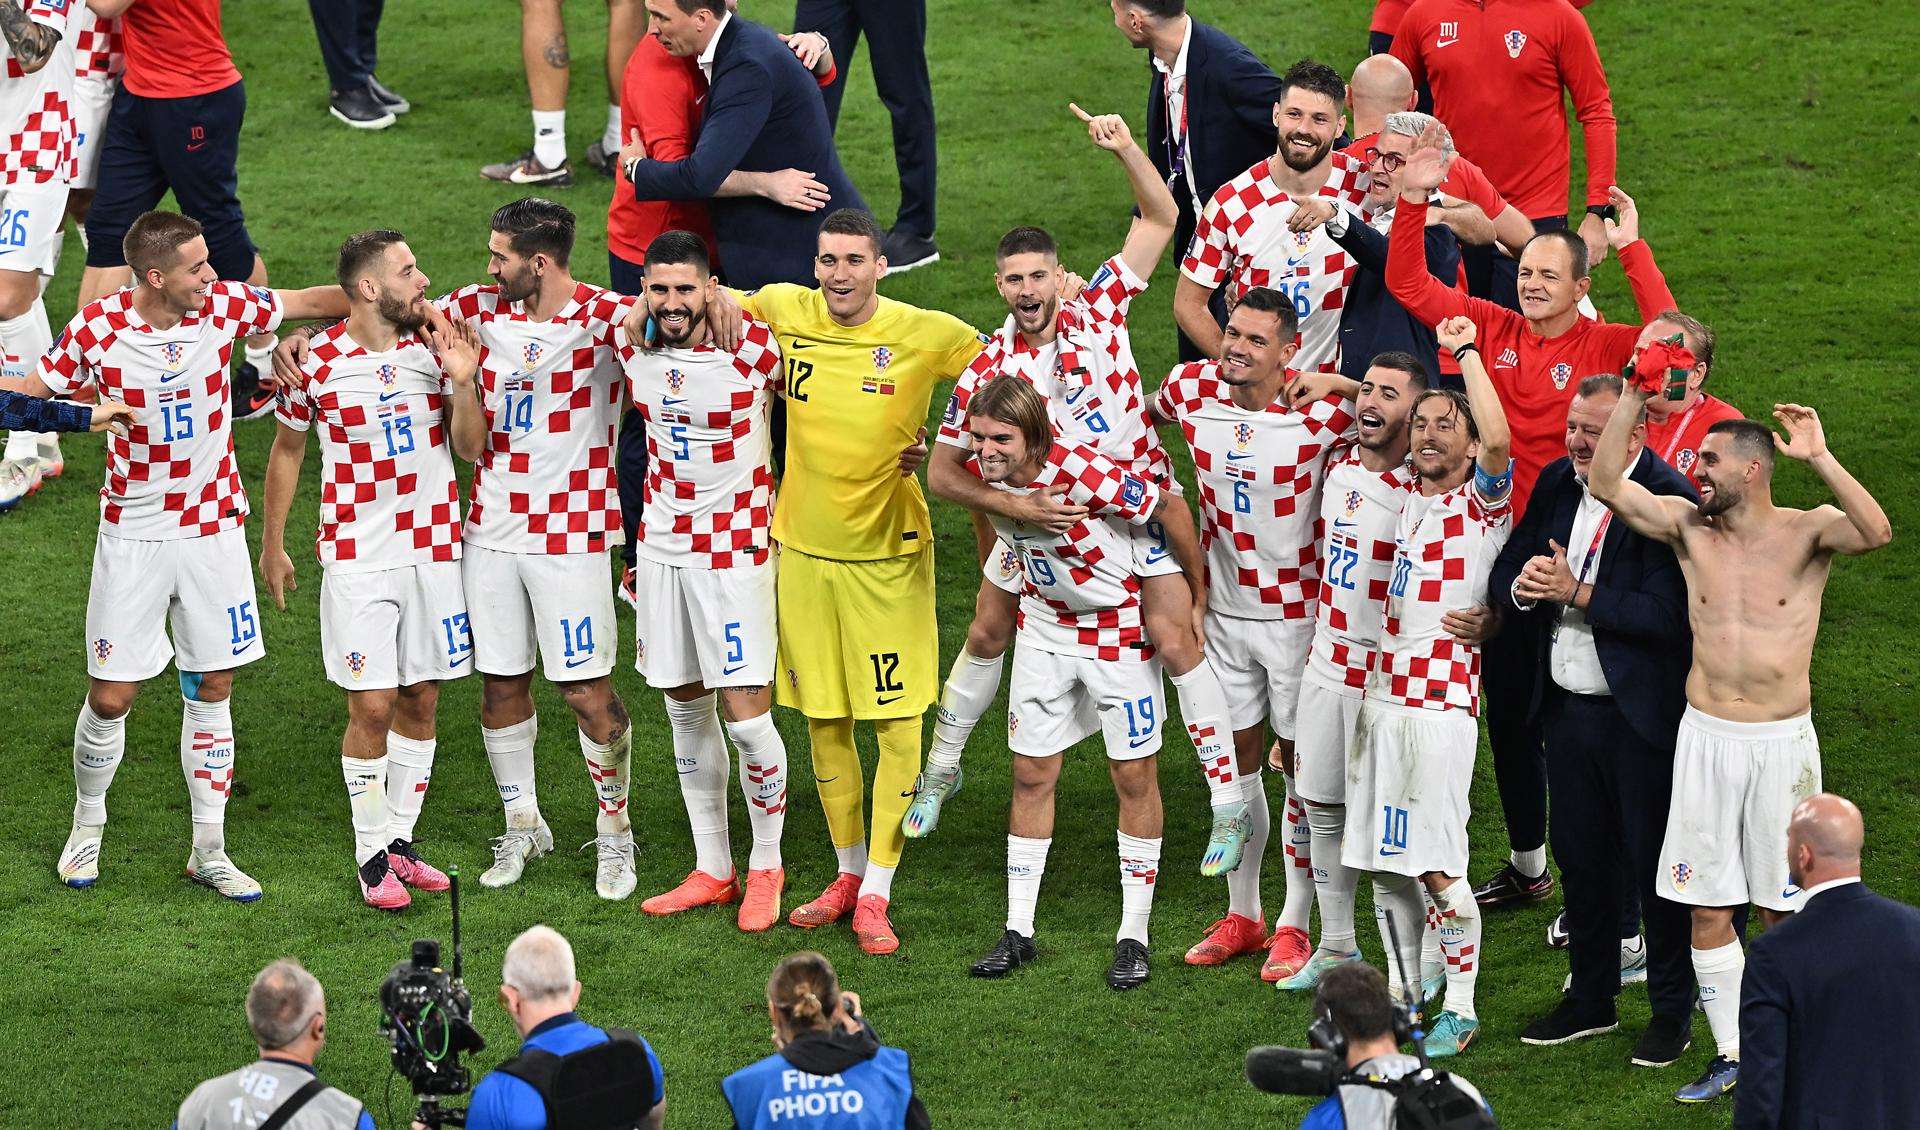 Croacia derrotó a Marruecos en el partido por el tercer lugar y sumaron su segundo podio consecutivo en Mundiales. Foto: EFE/EPA/Noushad Thekkayil